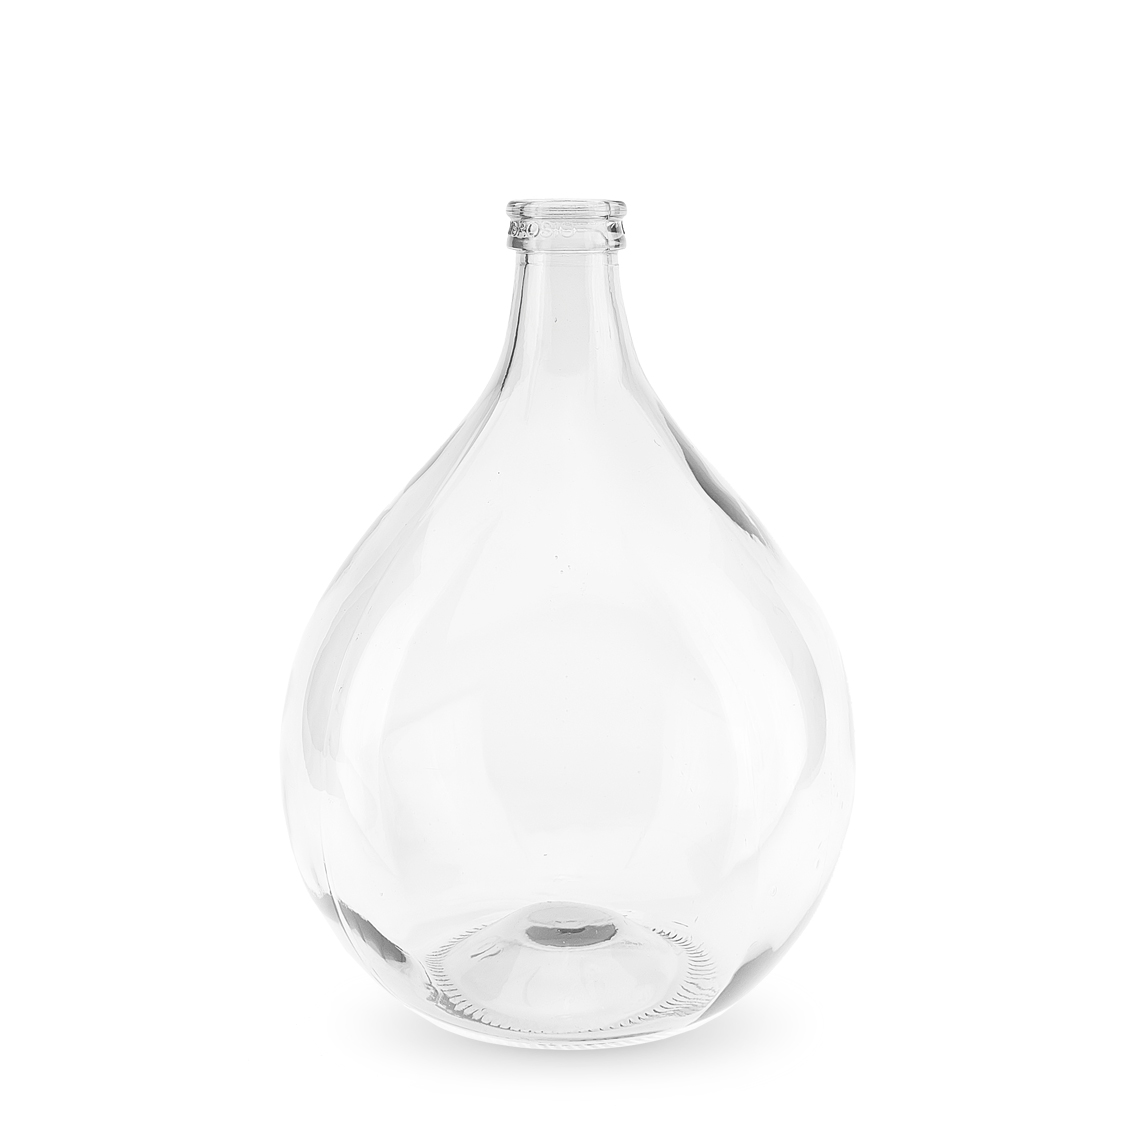 Ophef Zeker gebied Terrarium glazen fles 10 liter kopen - Stekkie